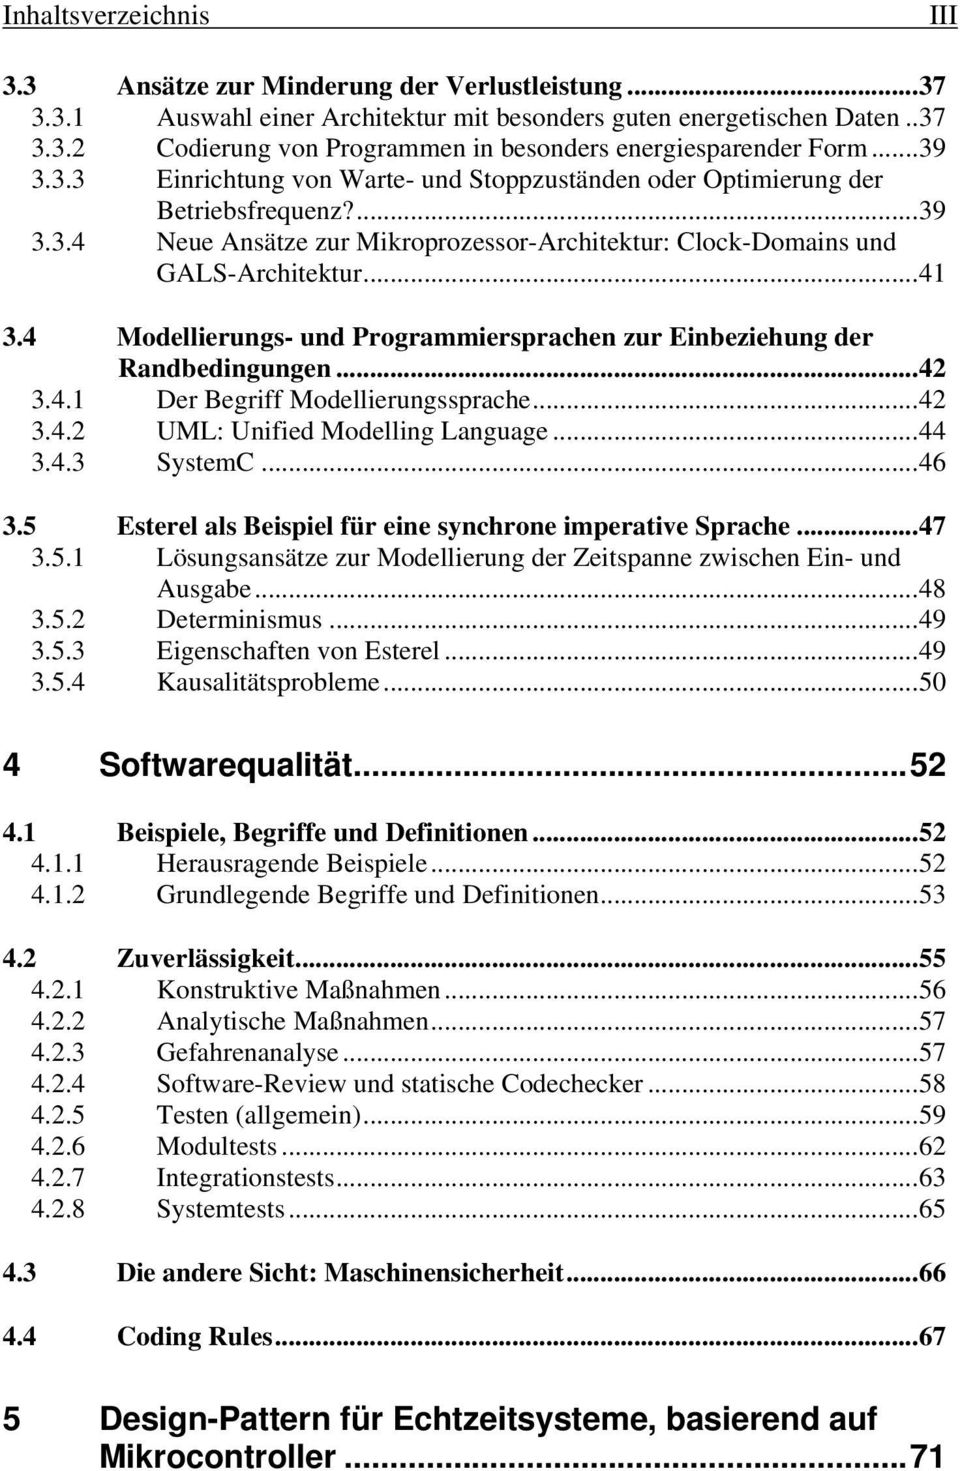 4 Modellierungs- und Programmiersprachen zur Einbeziehung der Randbedingungen...42 3.4.1 Der Begriff Modellierungssprache...42 3.4.2 UML: Unified Modelling Language...44 3.4.3 SystemC...46 3.